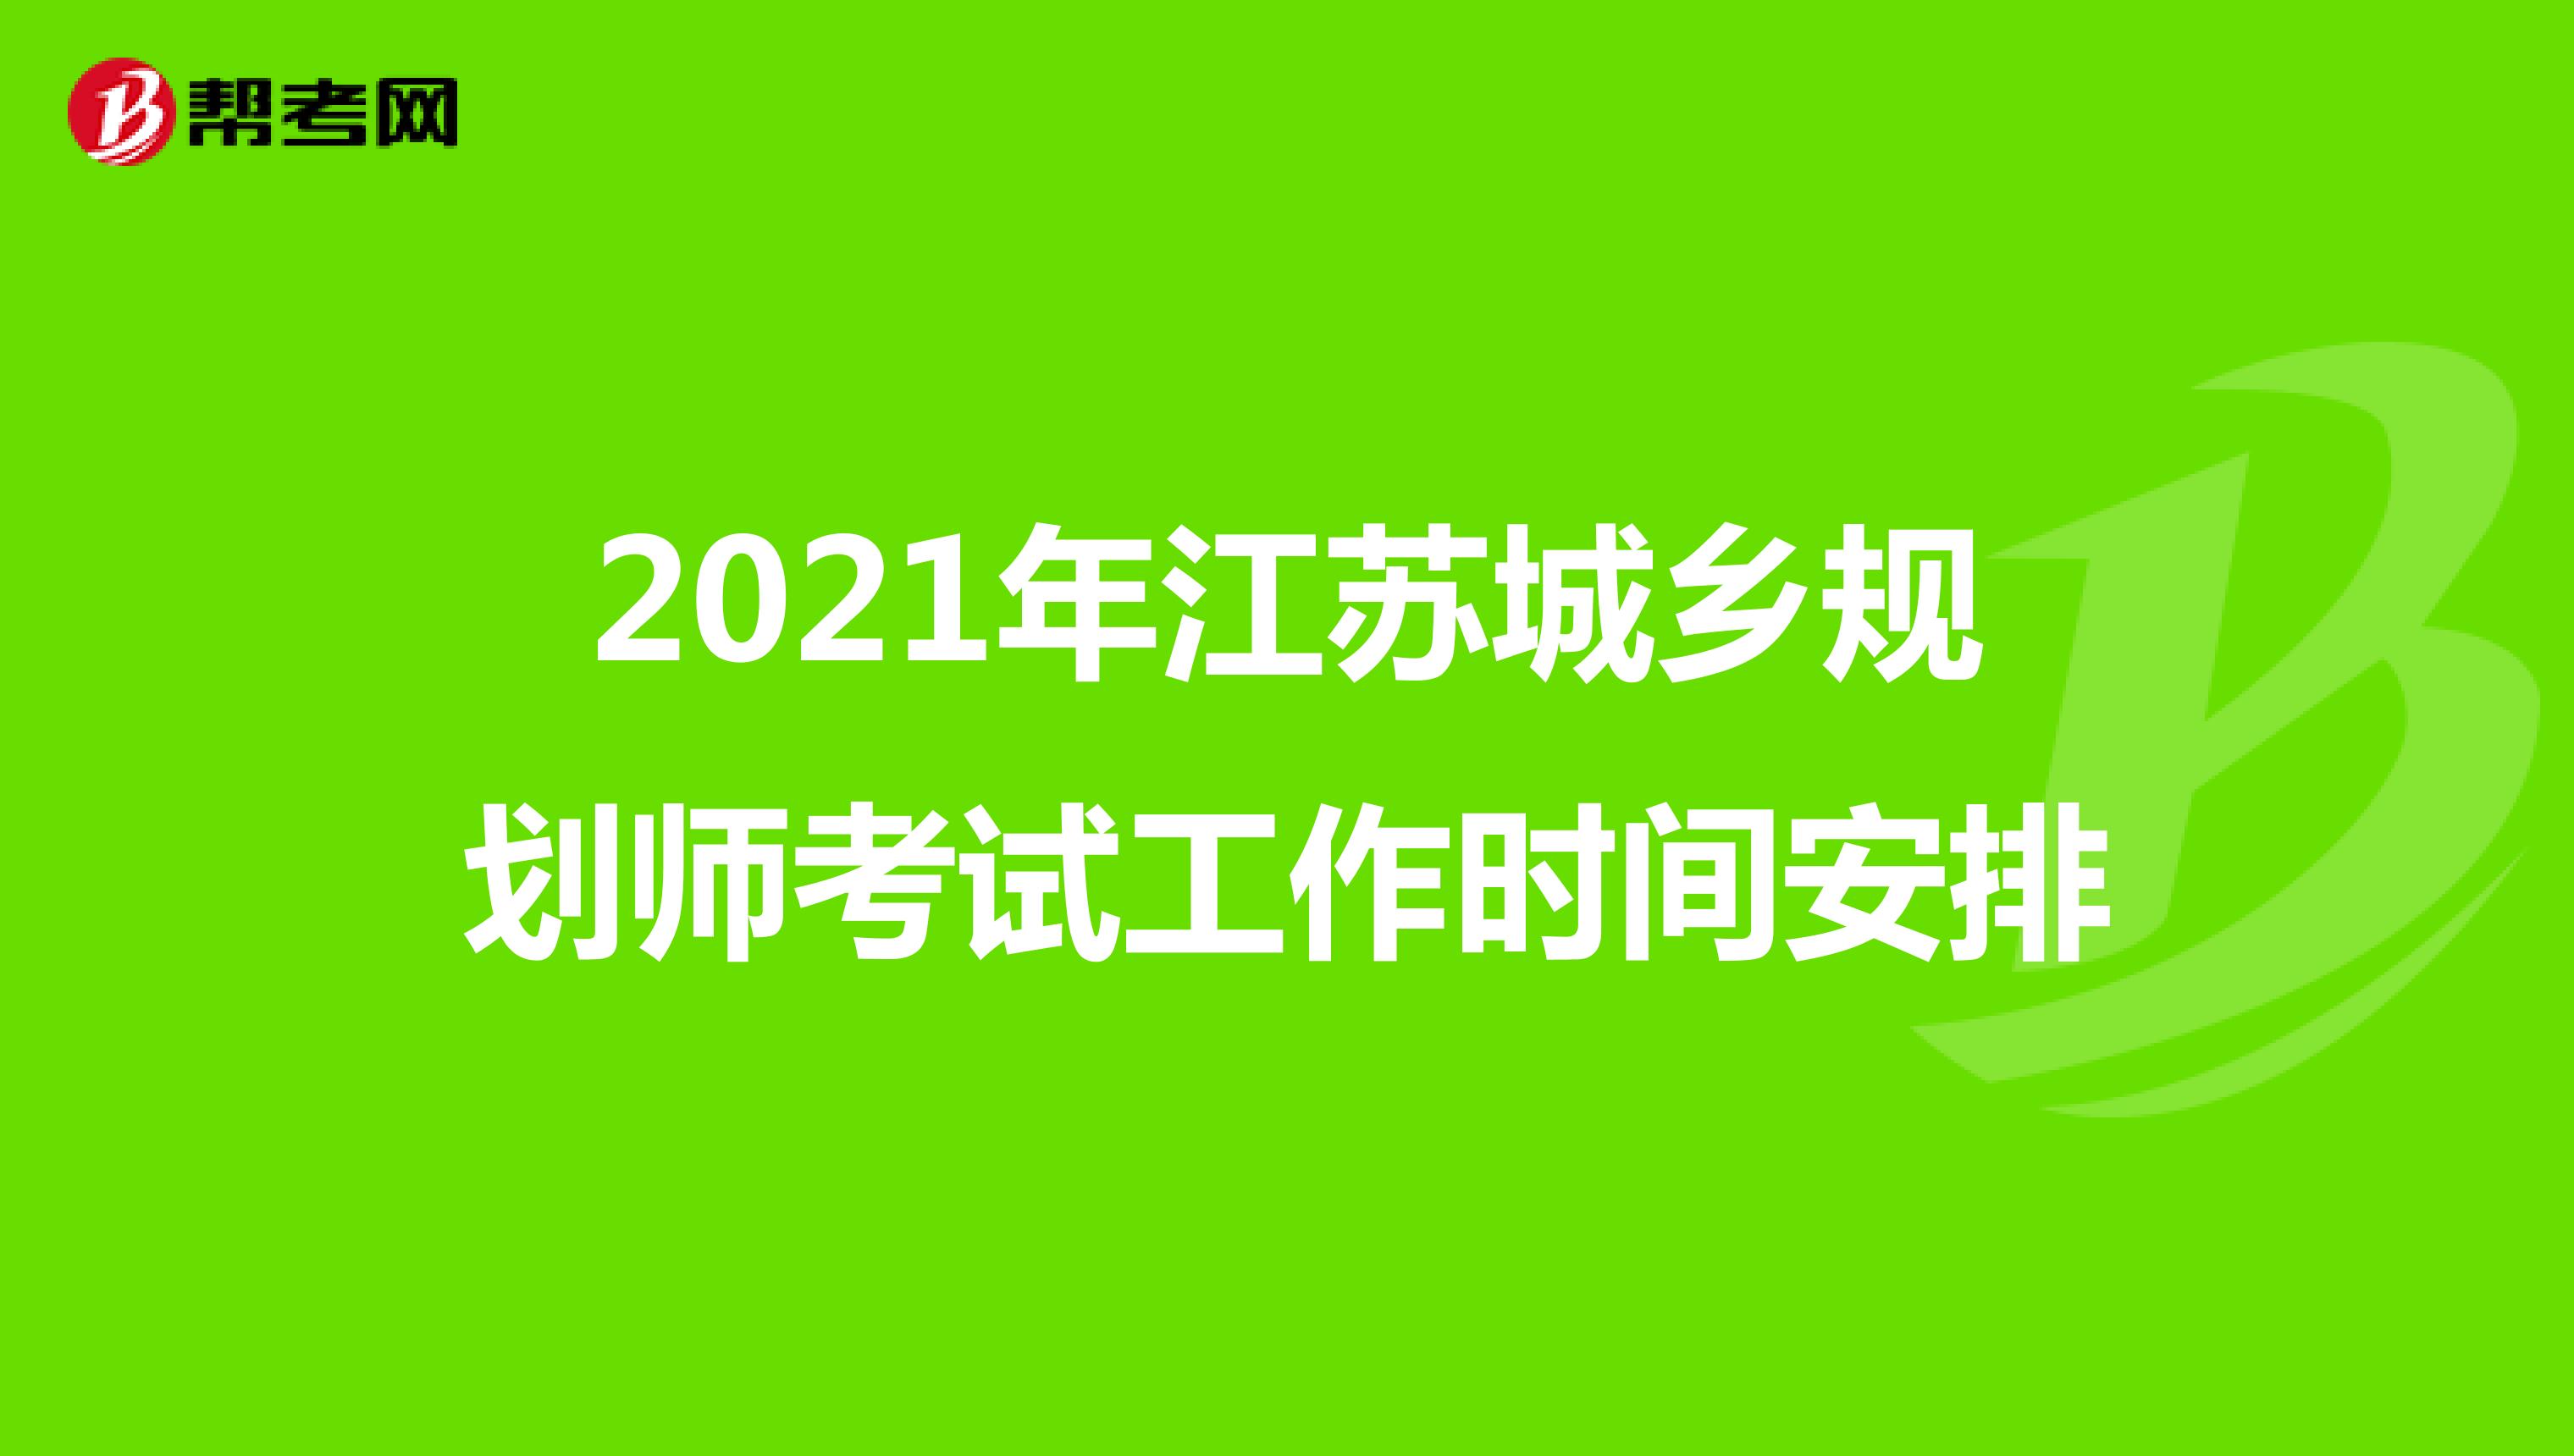 2021年江苏城乡规划师考试工作时间安排